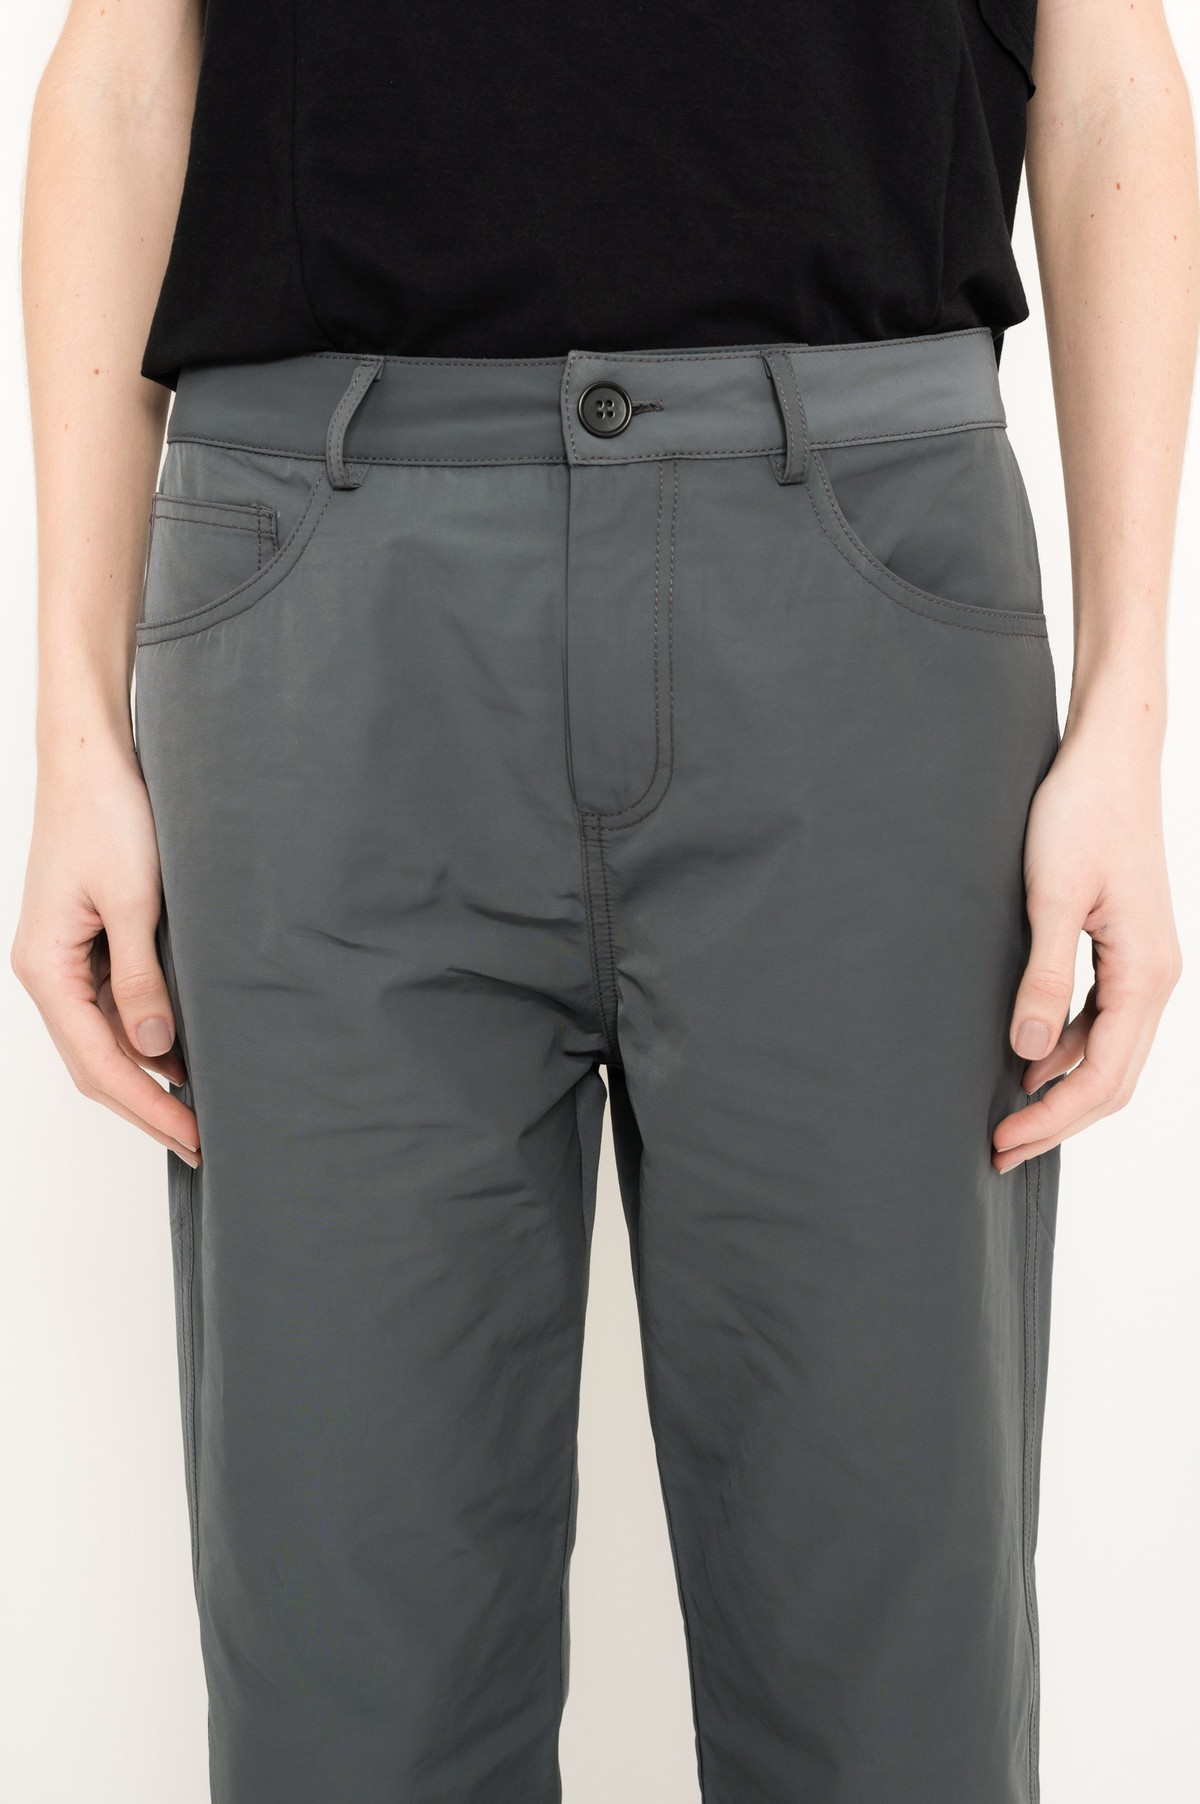 calça five pockets em tecido tecnológico | tech fabric five-pocket pants